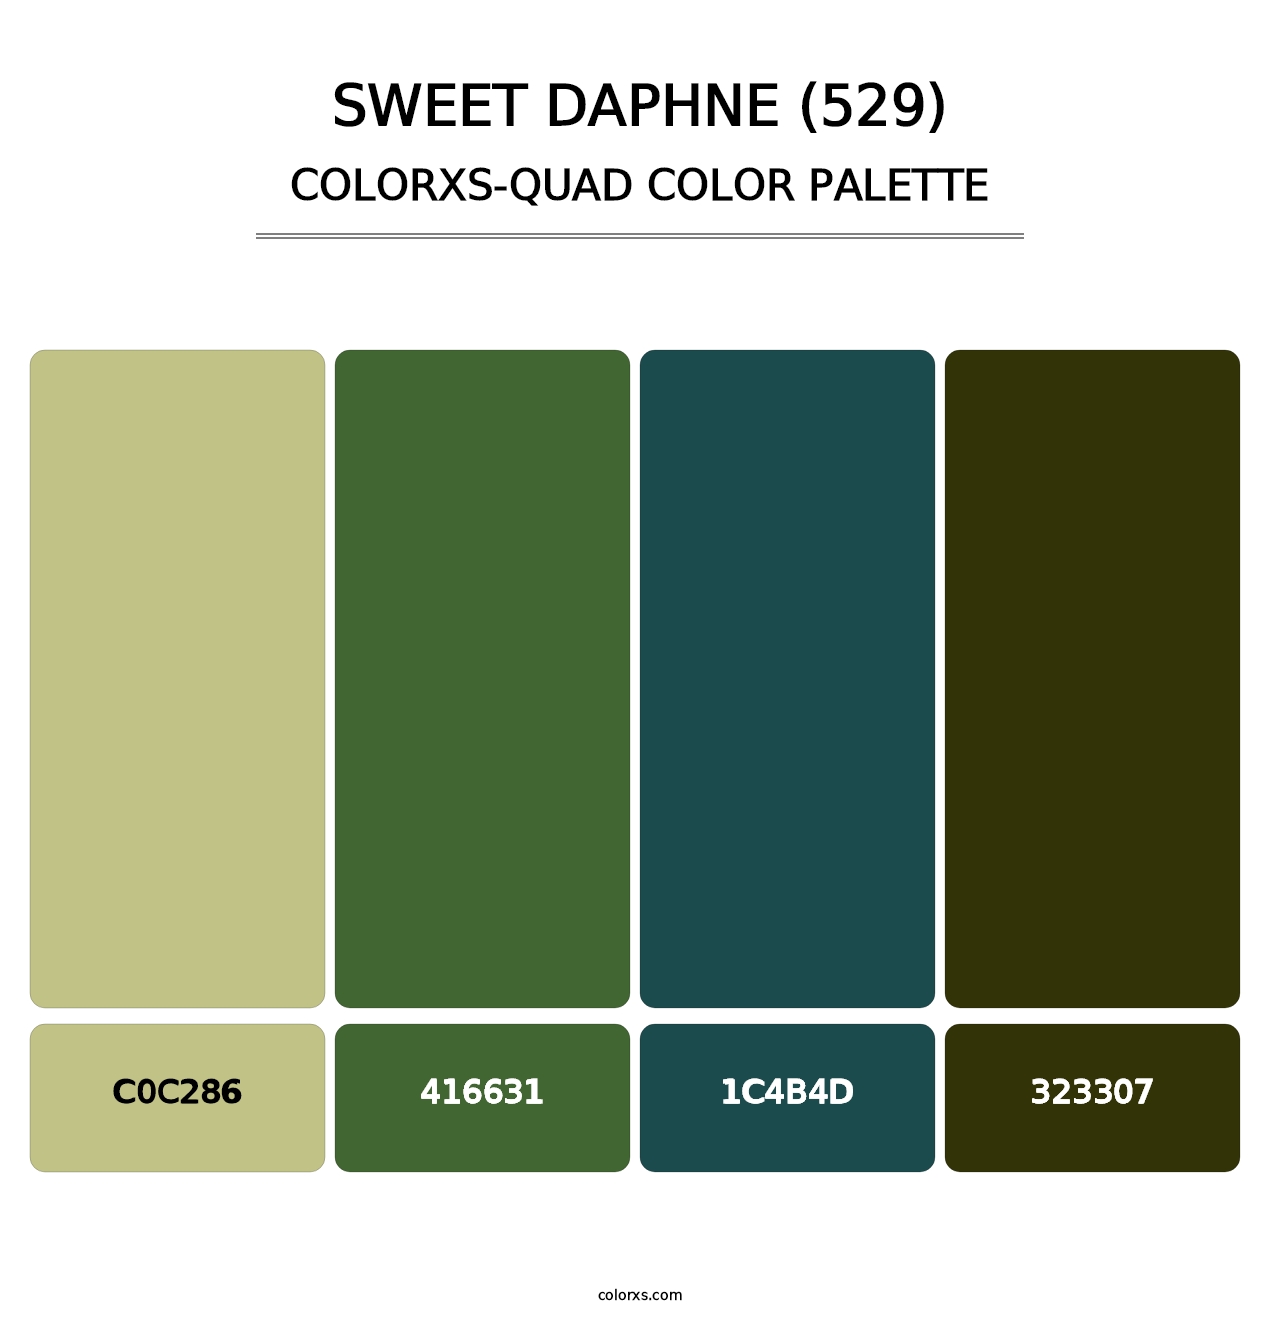 Sweet Daphne (529) - Colorxs Quad Palette